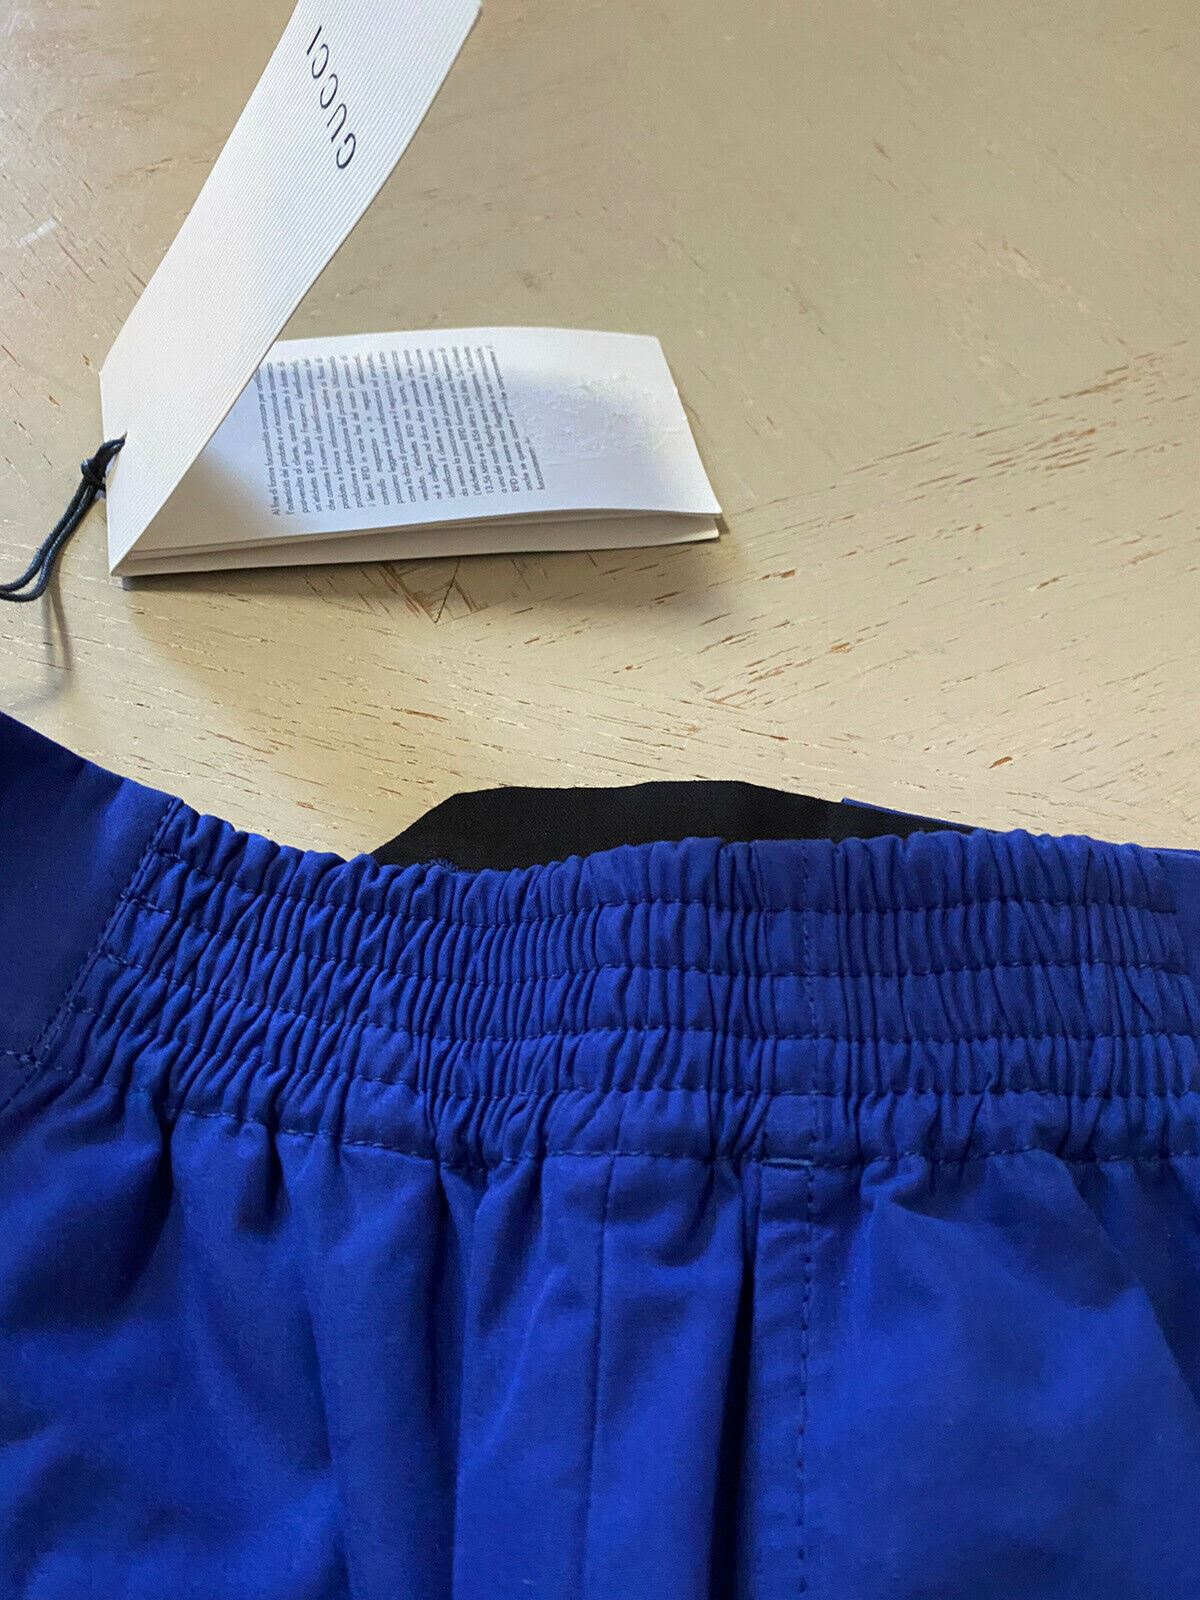 СЗТ $880 Мужские короткие брюки Gucci синие, размер 32 США (48 ЕС) Италия